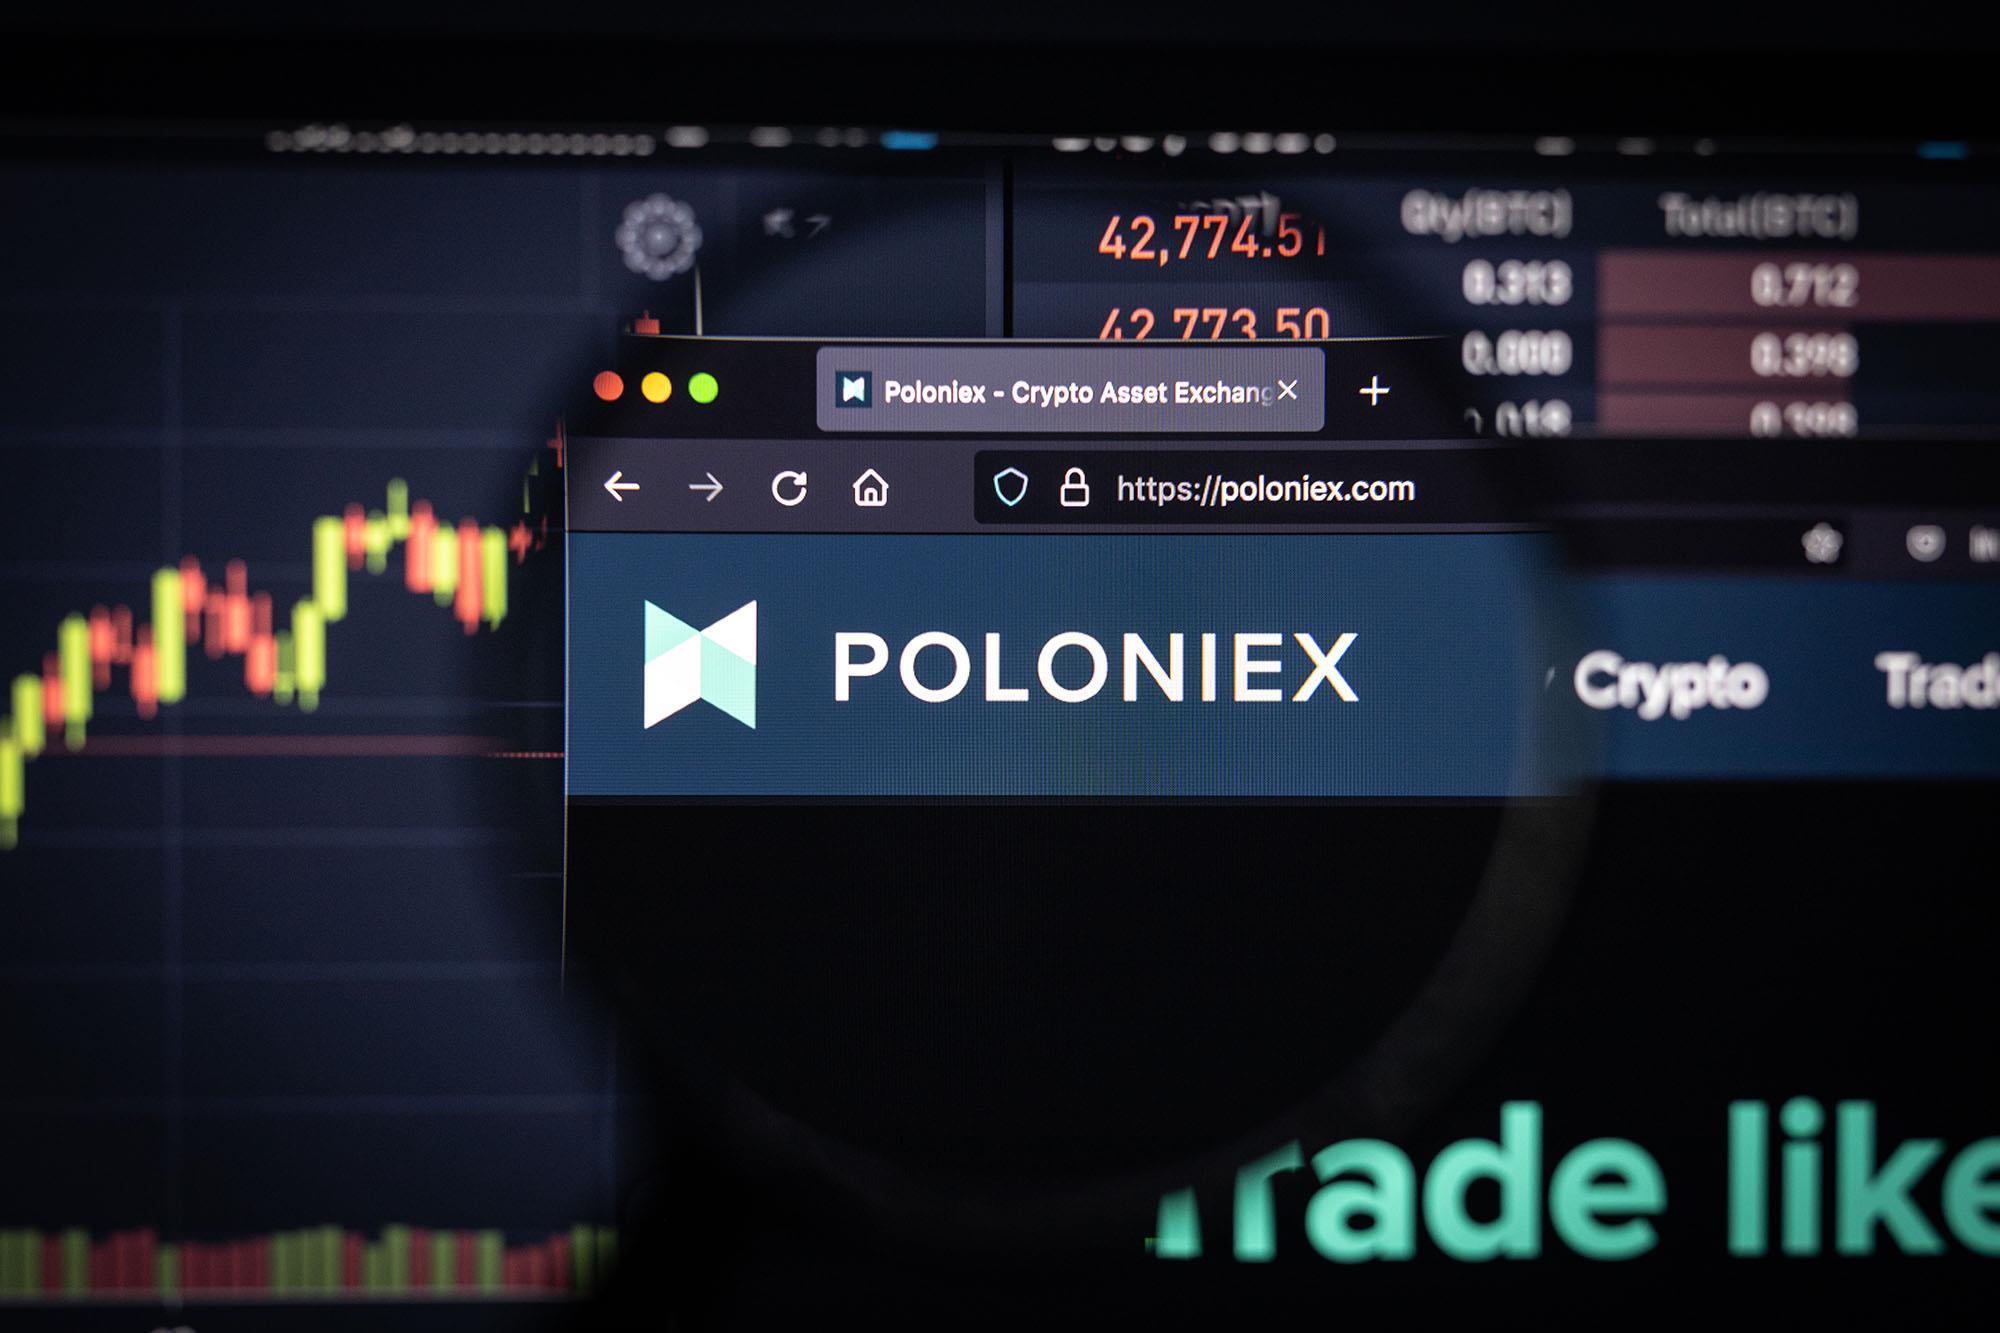 Poloniex - Crypto Asset Exchange